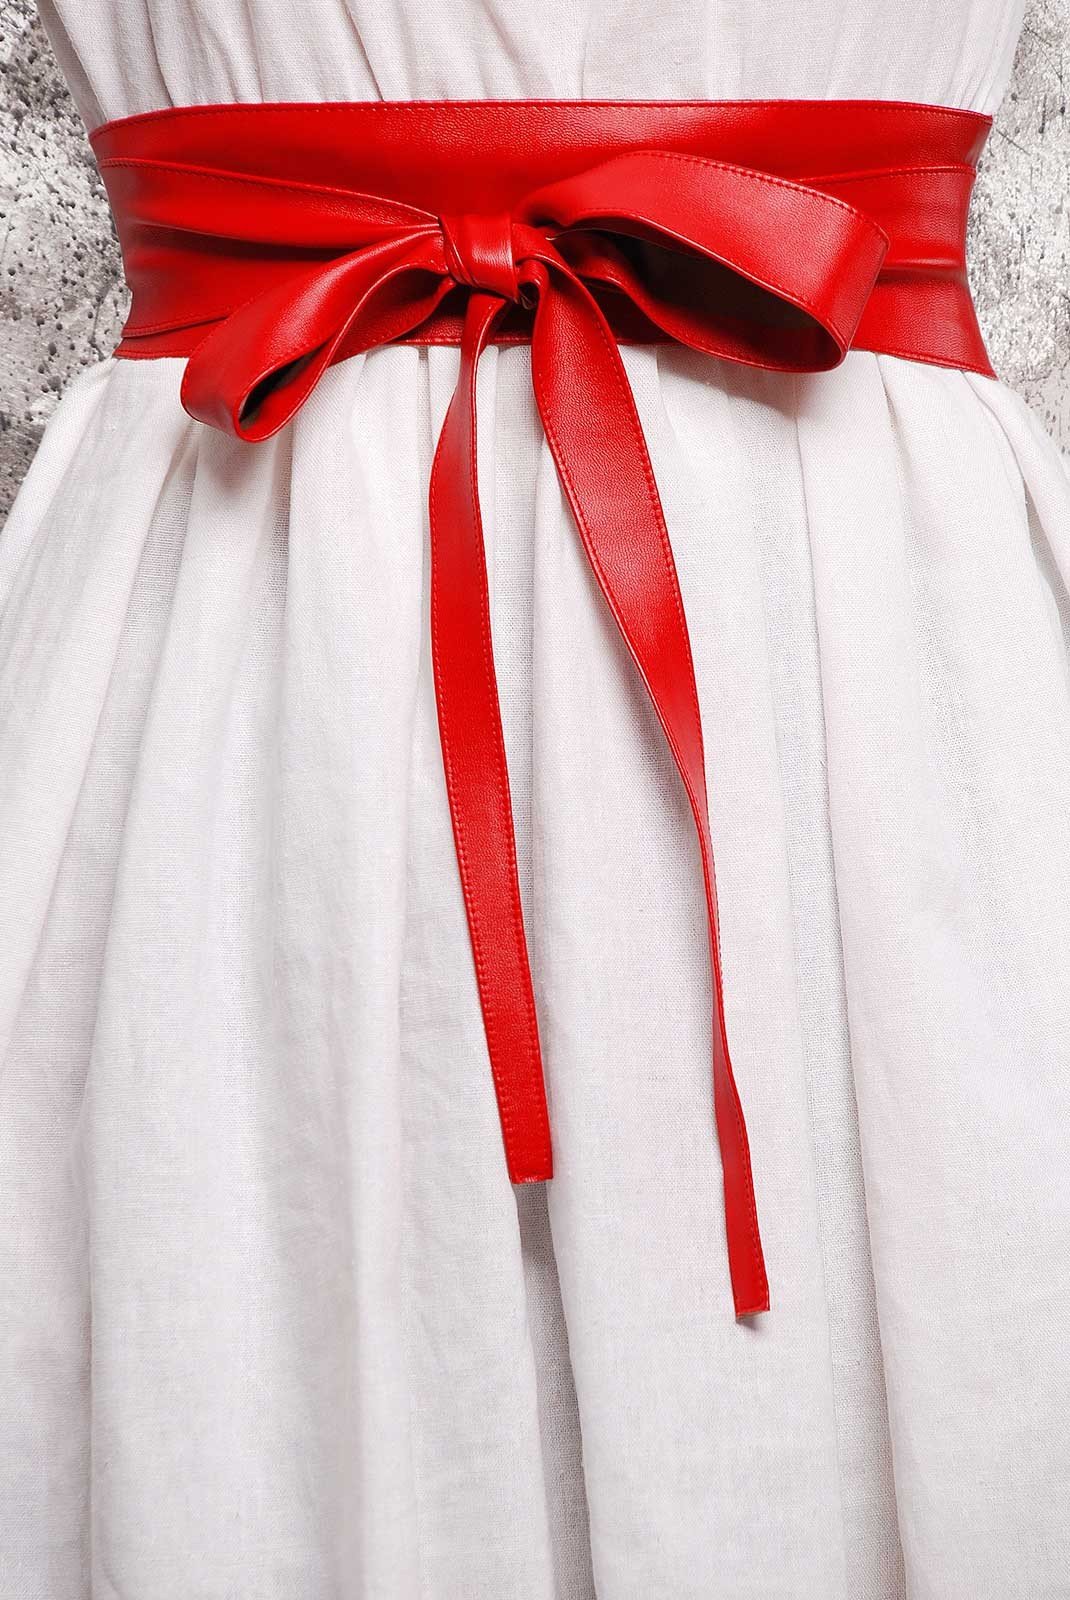 Платье с красным поясом. Красное платье с поясом. Пояс, красный. Красный широкий пояс. Красный пояс женский.